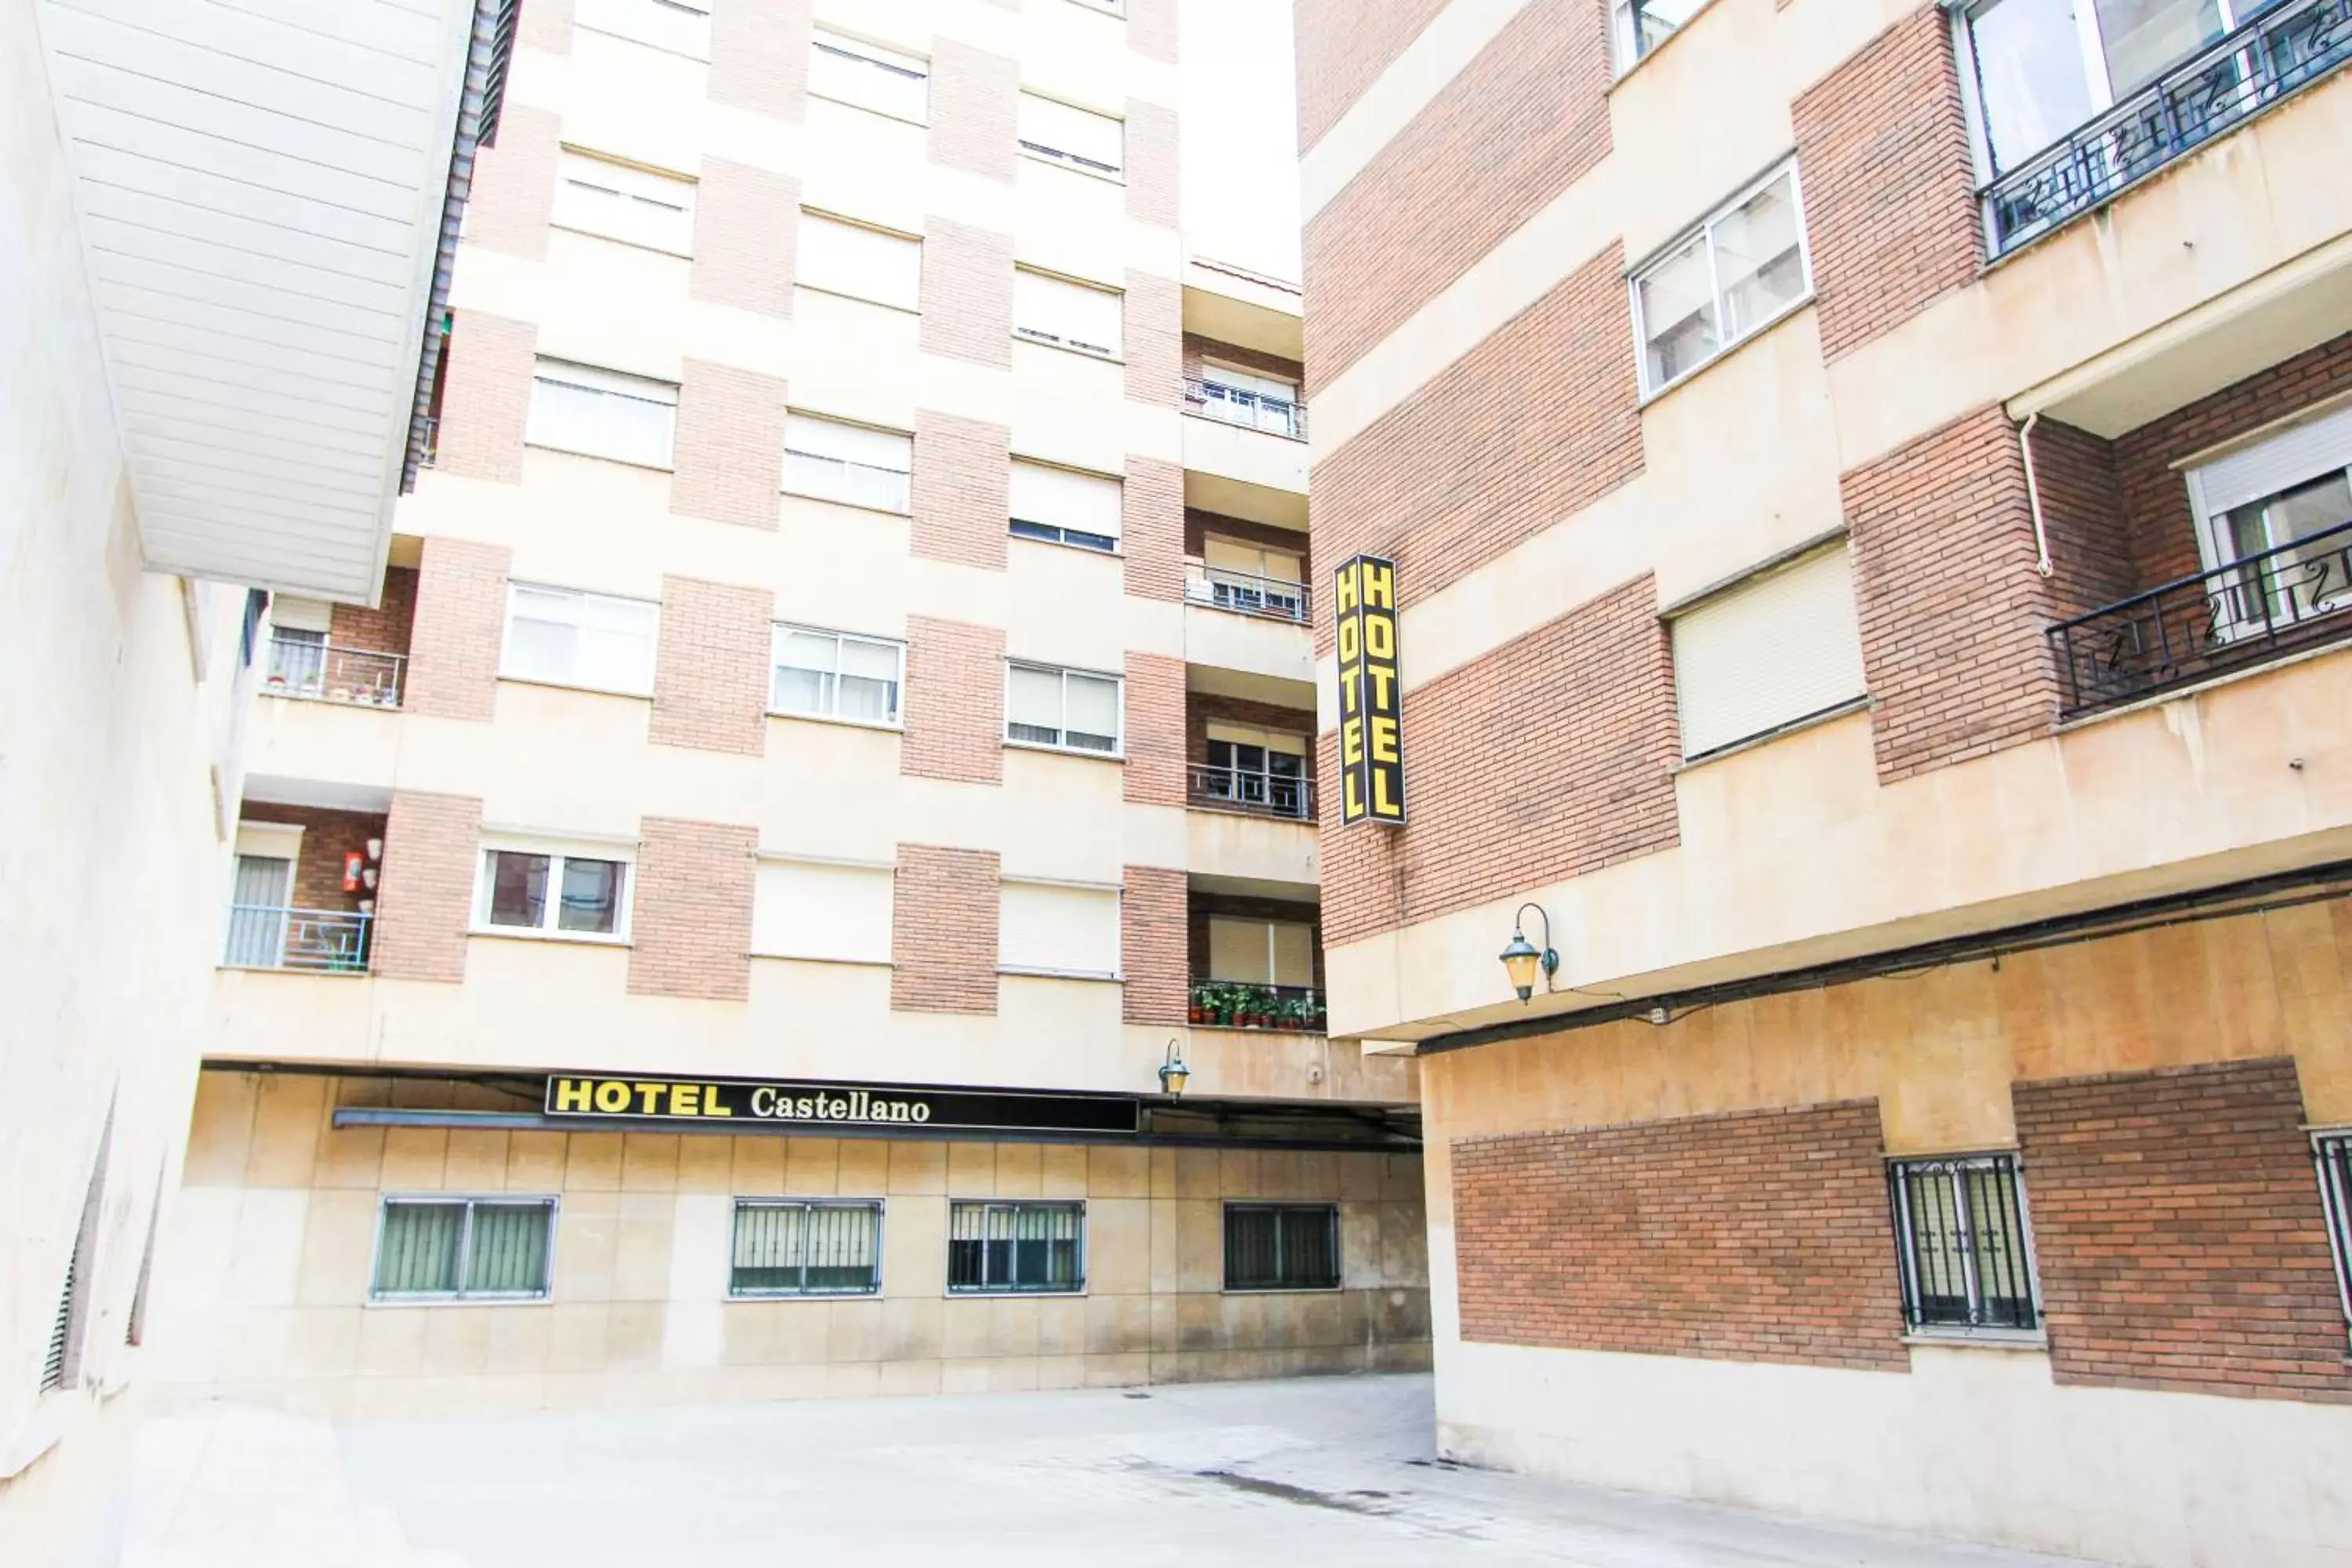 Property Building in Hotel Castellano Centro